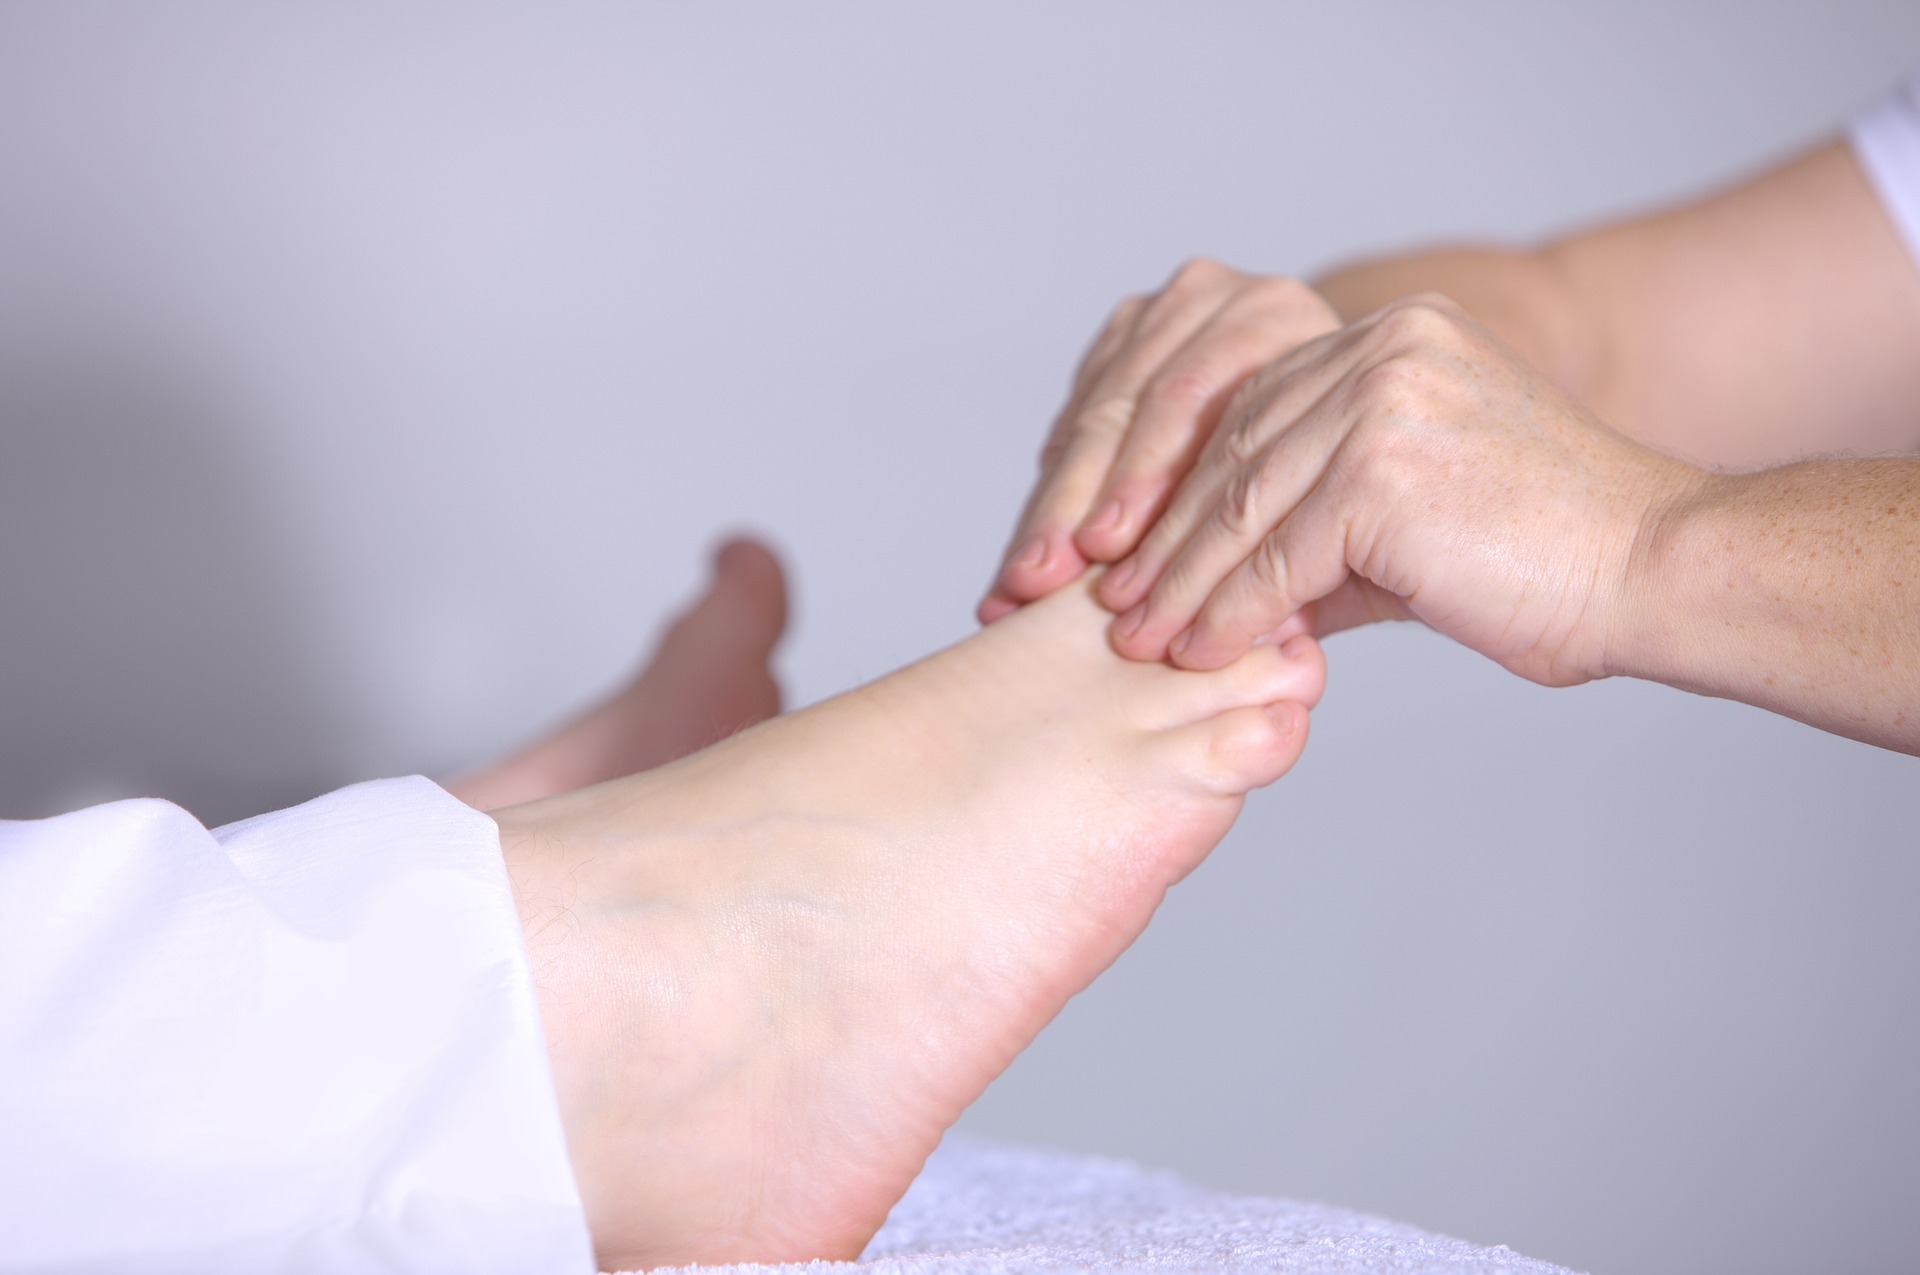 La médecine traditionnelle chinoise affirme que le pied comporte plus de 60 points d'acupuncture étroitement liés aux 12 méridiens des organes internes. (Image: Pixabay / CC0 1.0 )